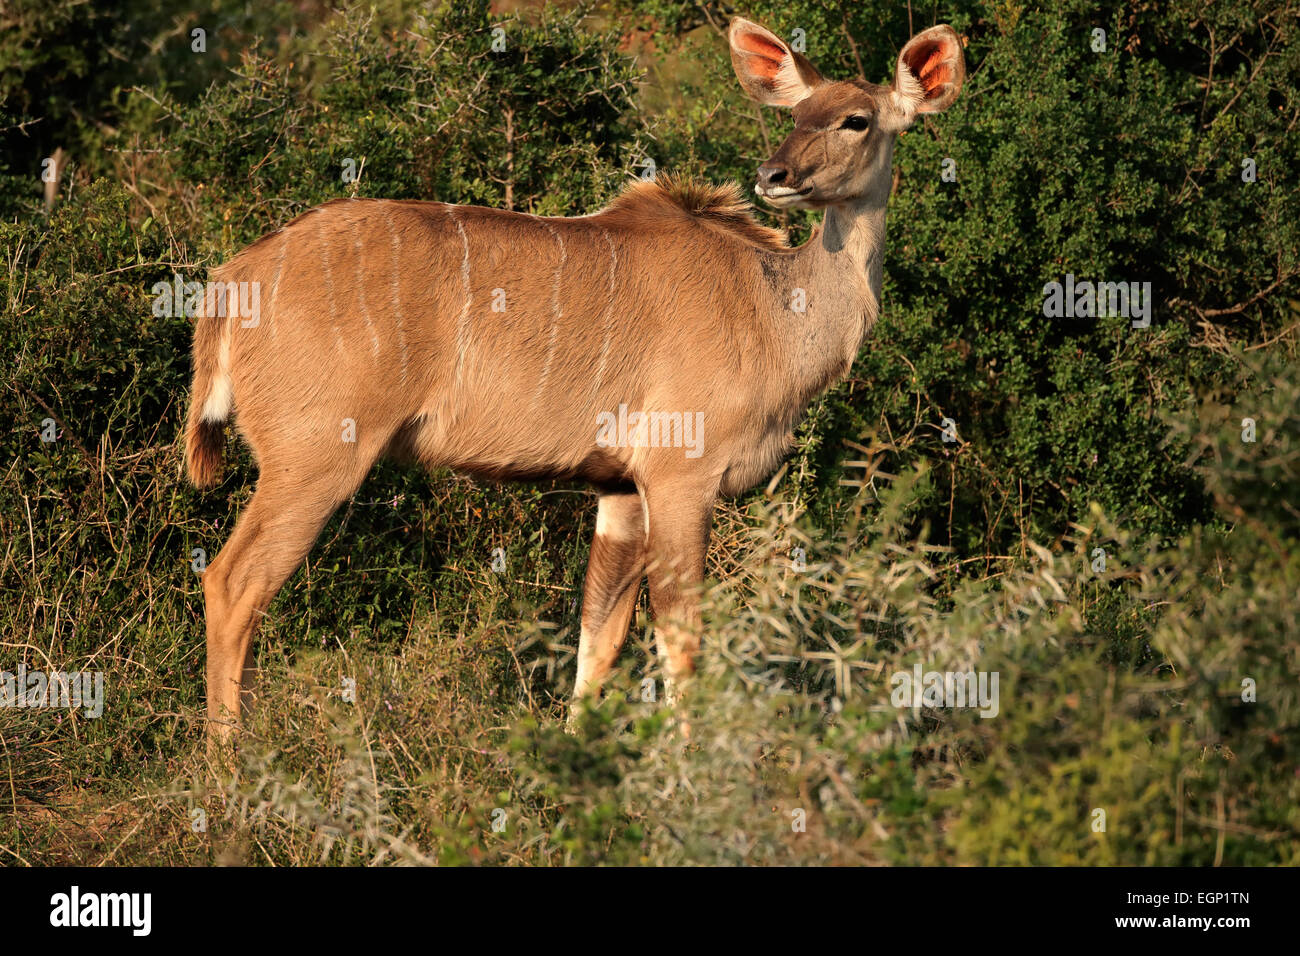 Weibliche Kudu Antilope (Tragelaphus Strepsiceros) im natürlichen Lebensraum, Südafrika Stockfoto